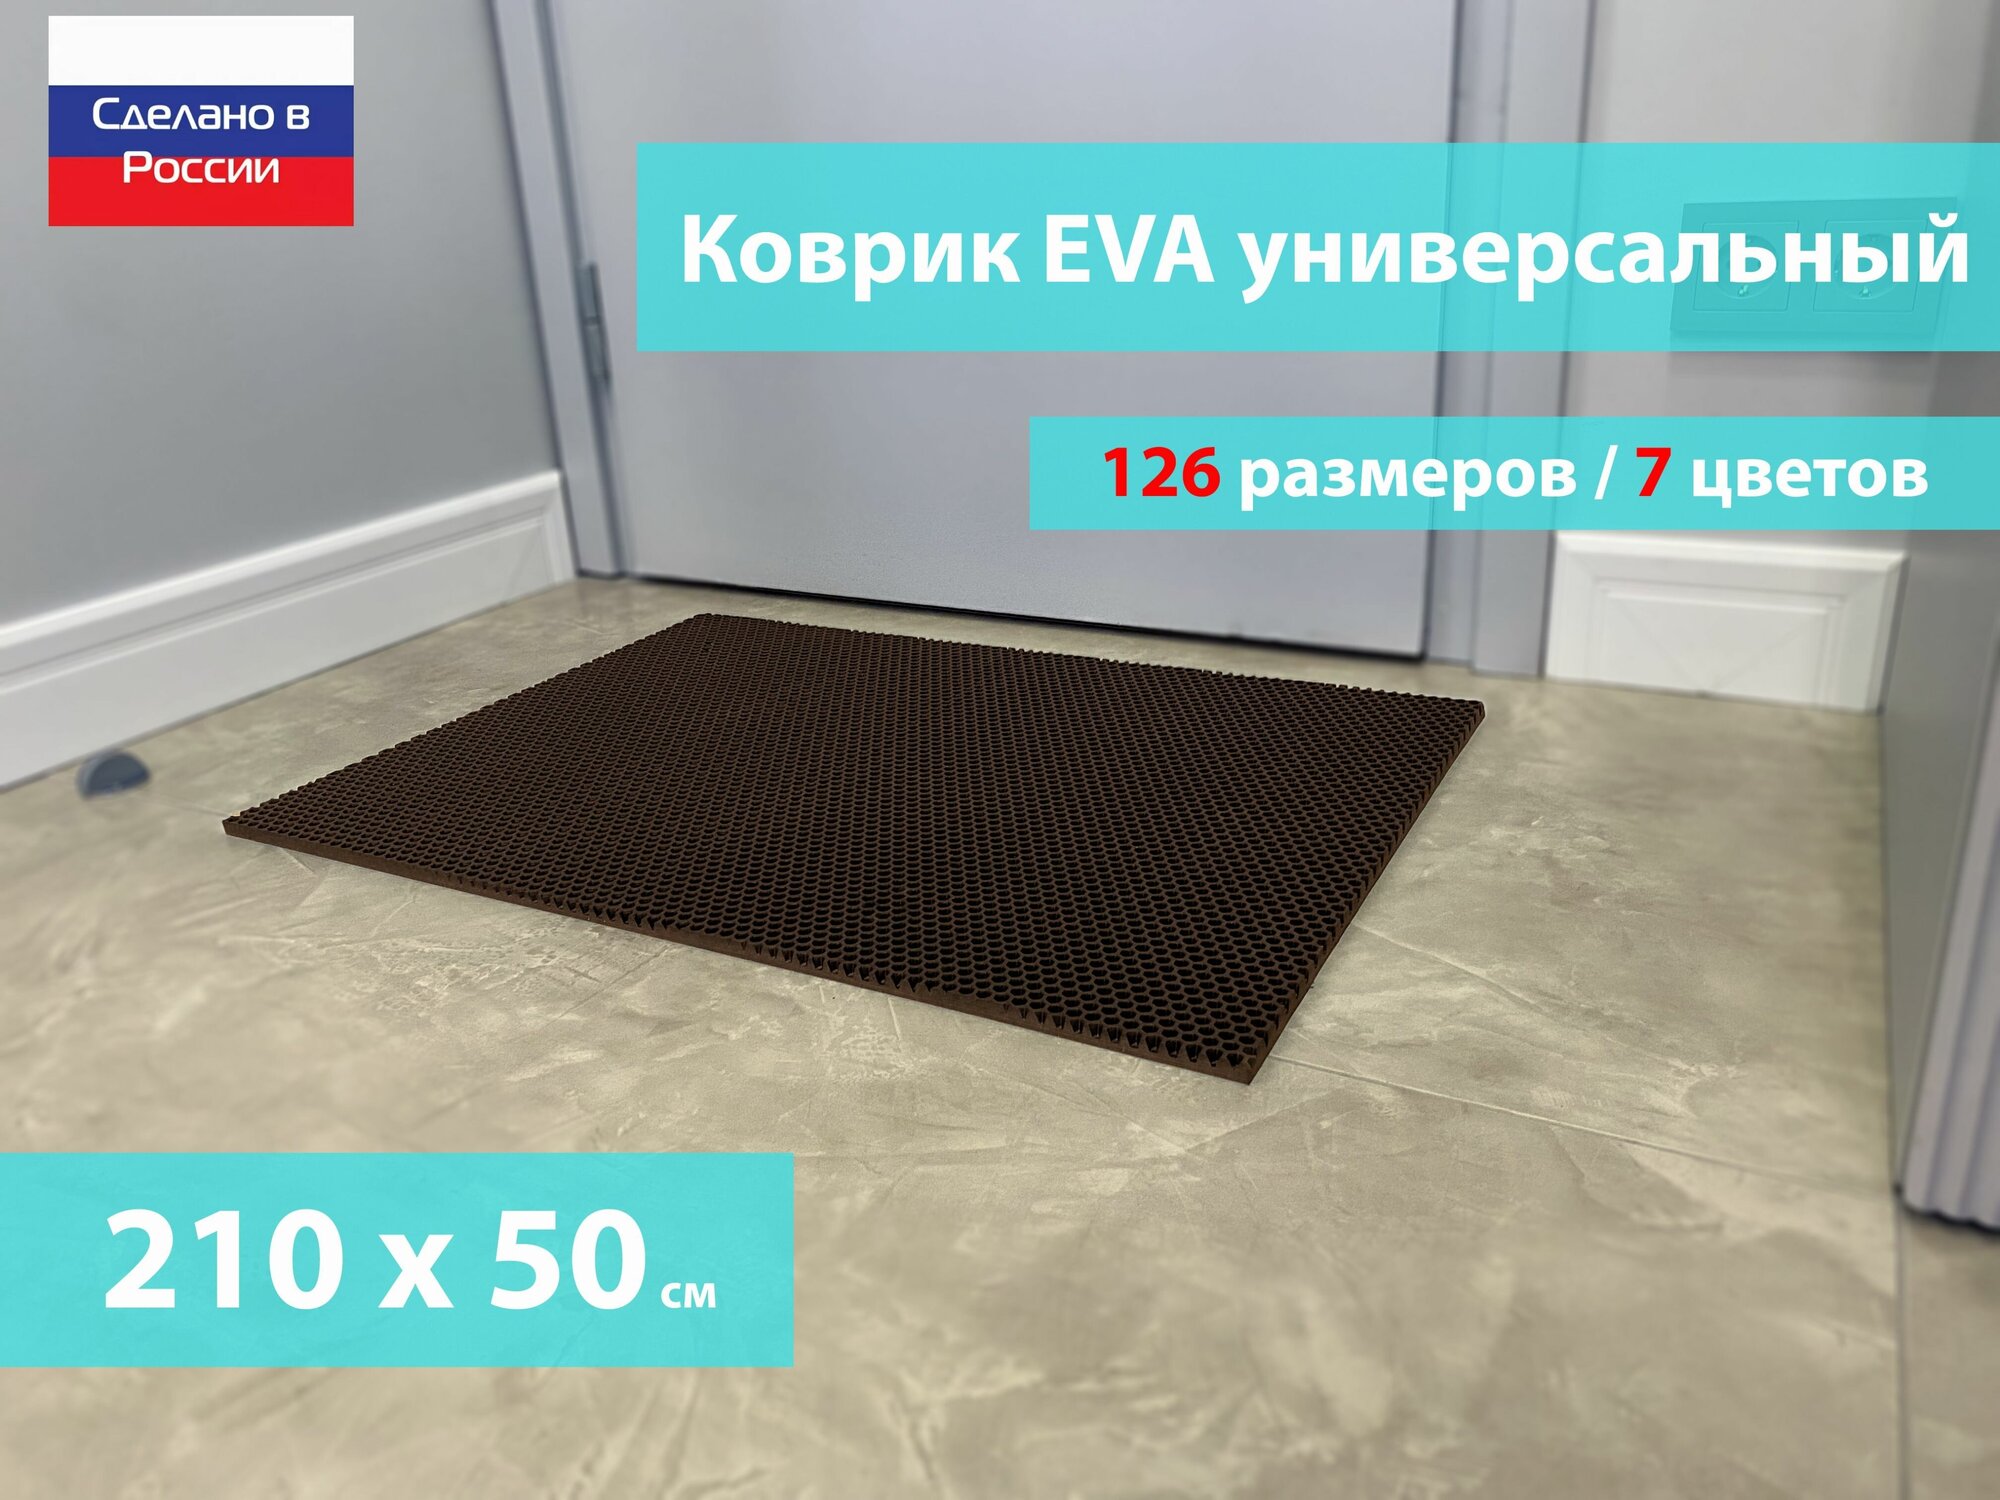 Коврик придверный EVA (ЕВА) в прихожую для обуви / Ковер ЭВА на пол перед дверью/ коричневый / размер 210 х 50 см